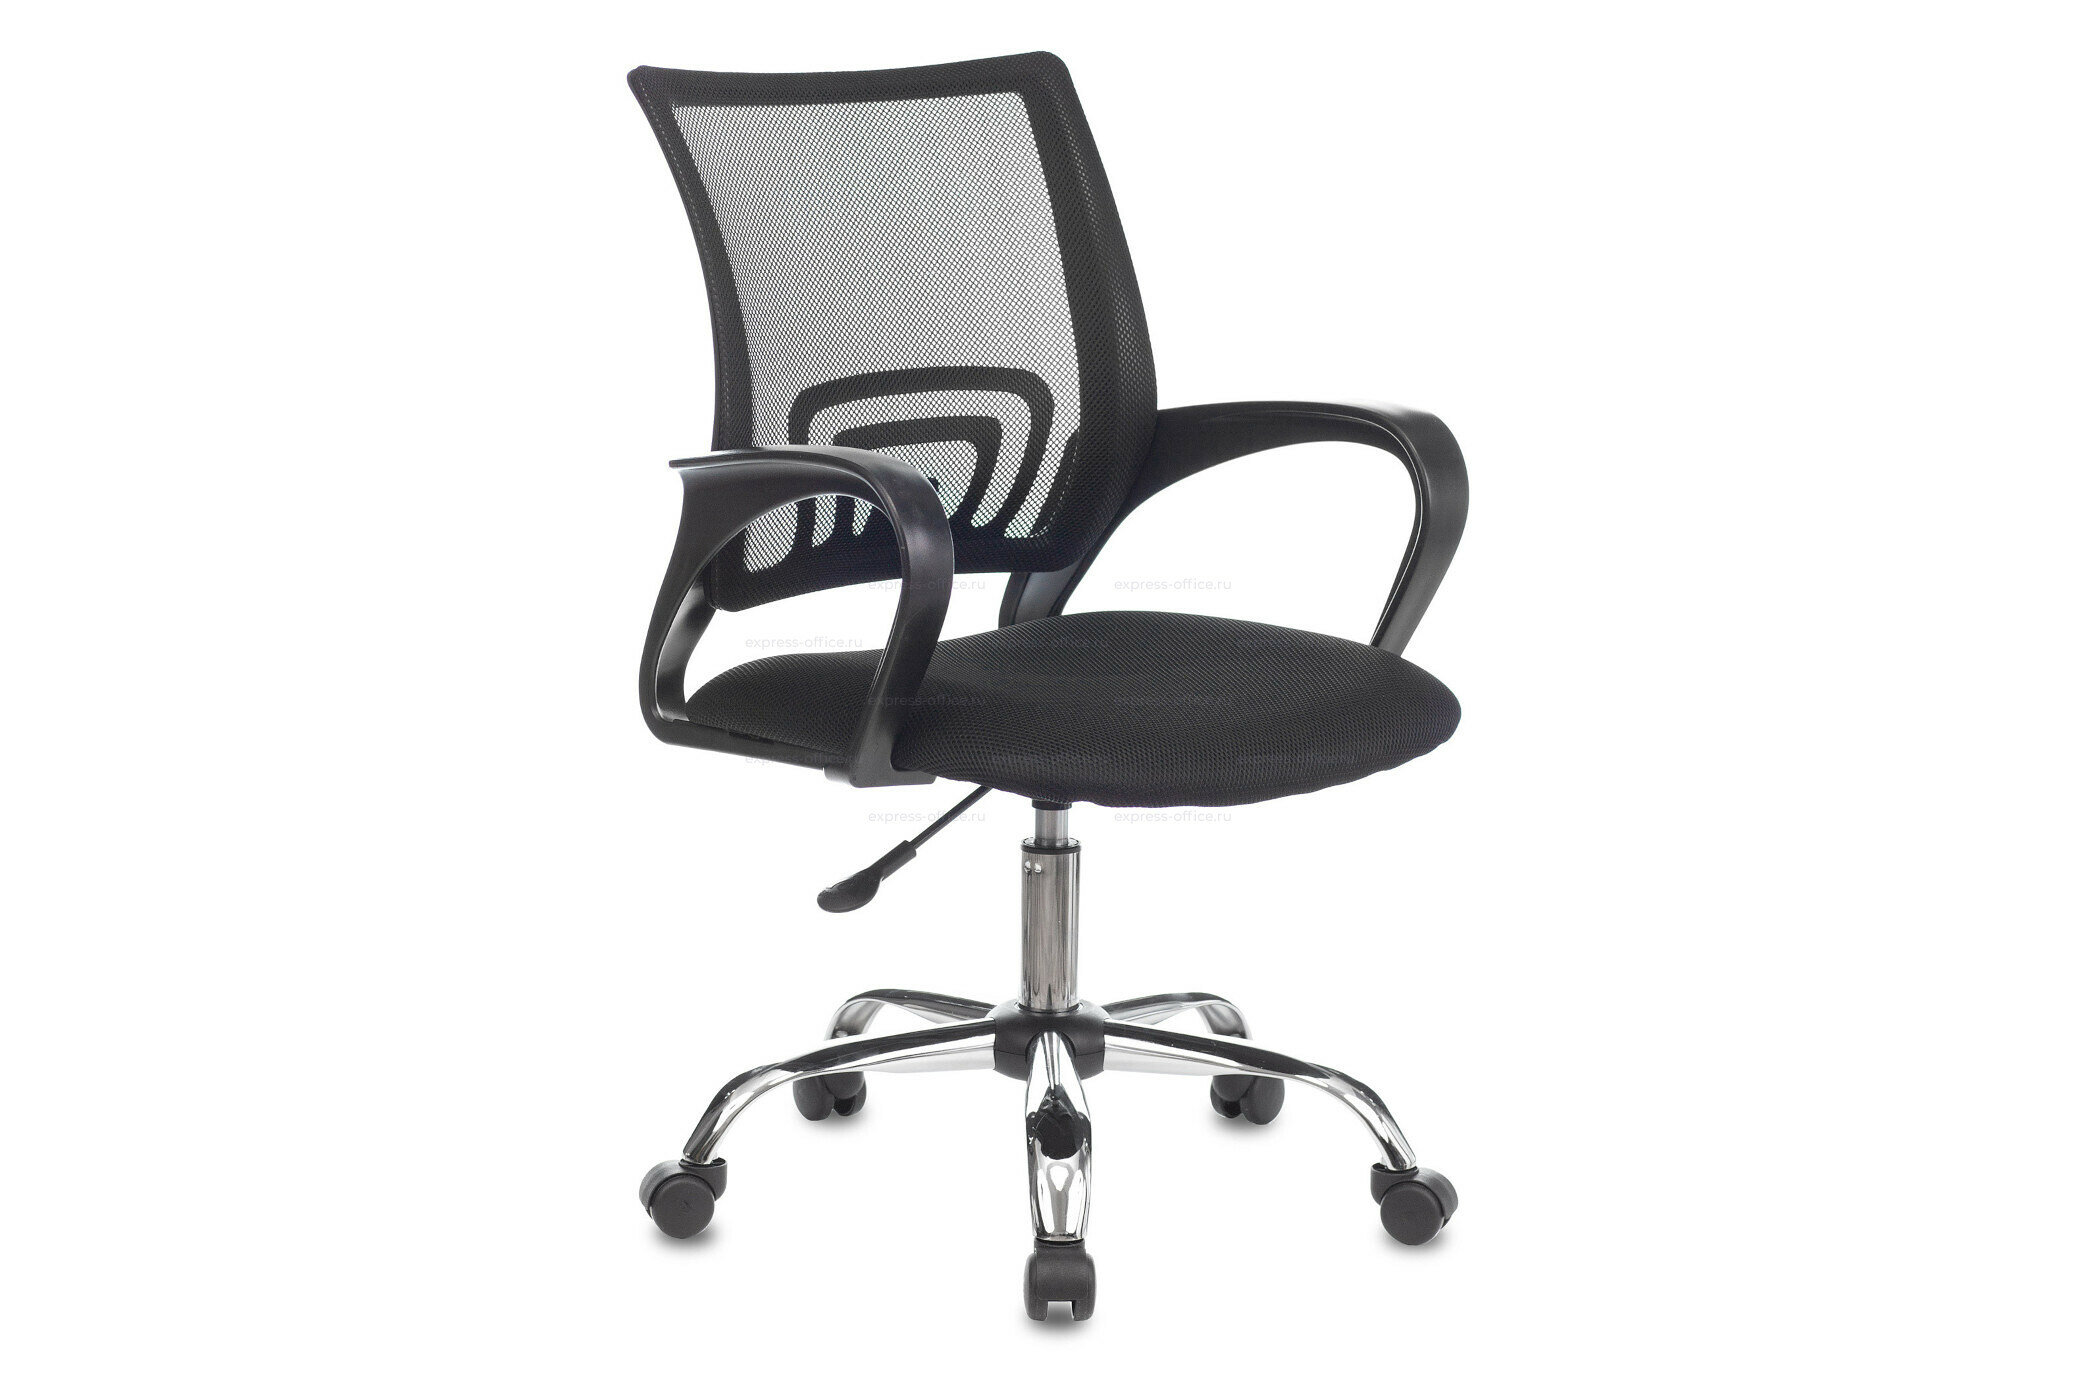 Компьютерное кресло Бюрократ CH-695NLTSL офисное, обивка: текстиль, цвет: черный